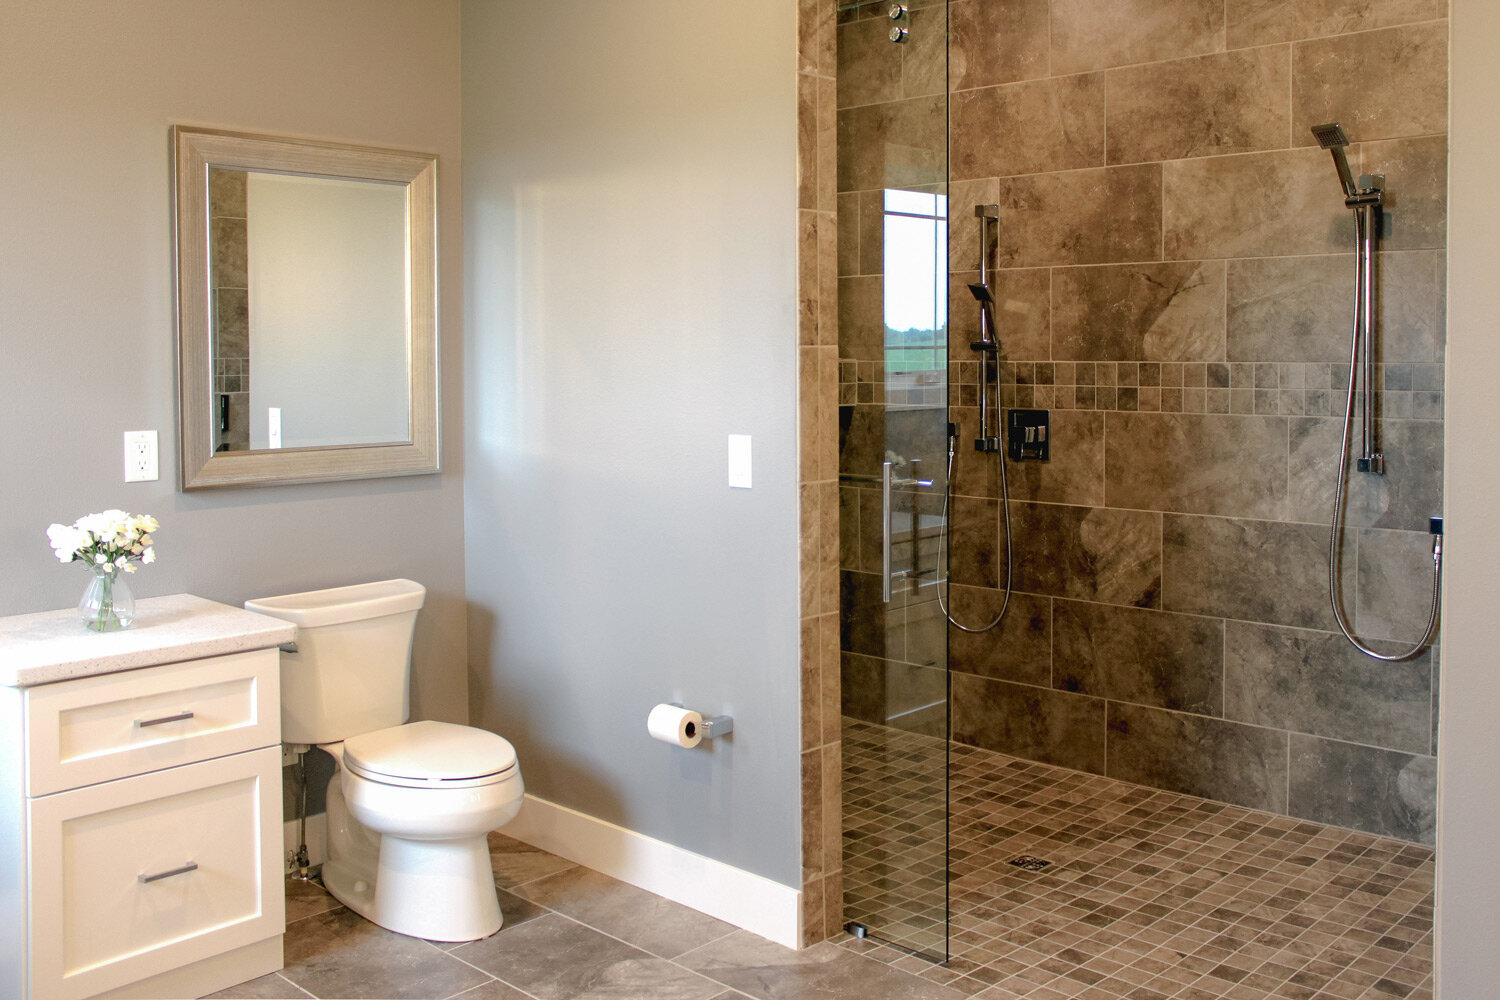 Fiberglass Prefab Shower Stalls Vs, Tiled Showers Photos